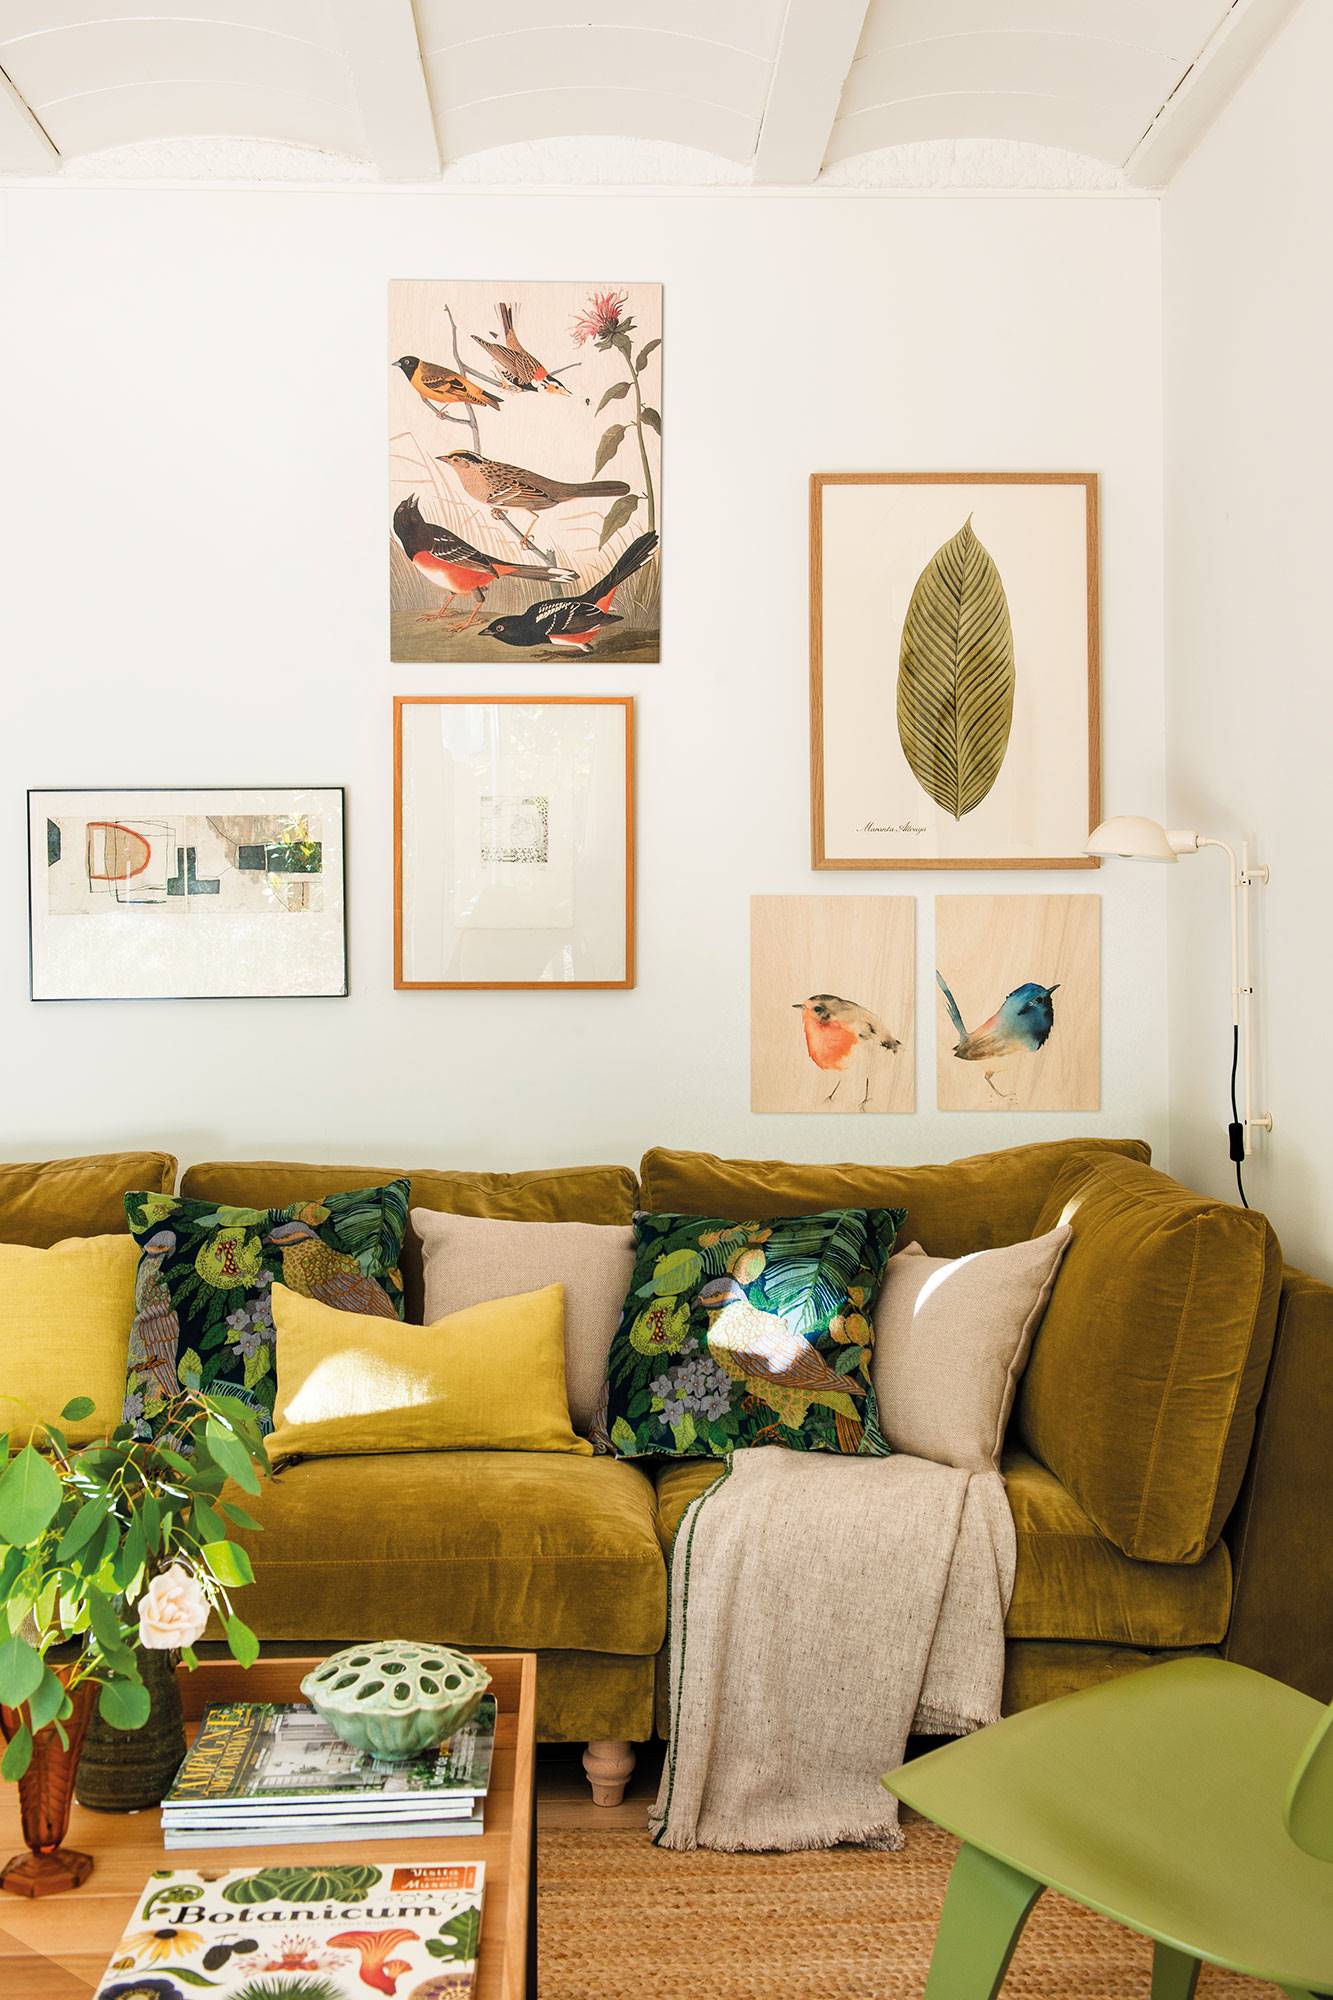 Salón con sofá de terciopelo verde, cojines estampados y amarillos  y láminas decorando la pared.